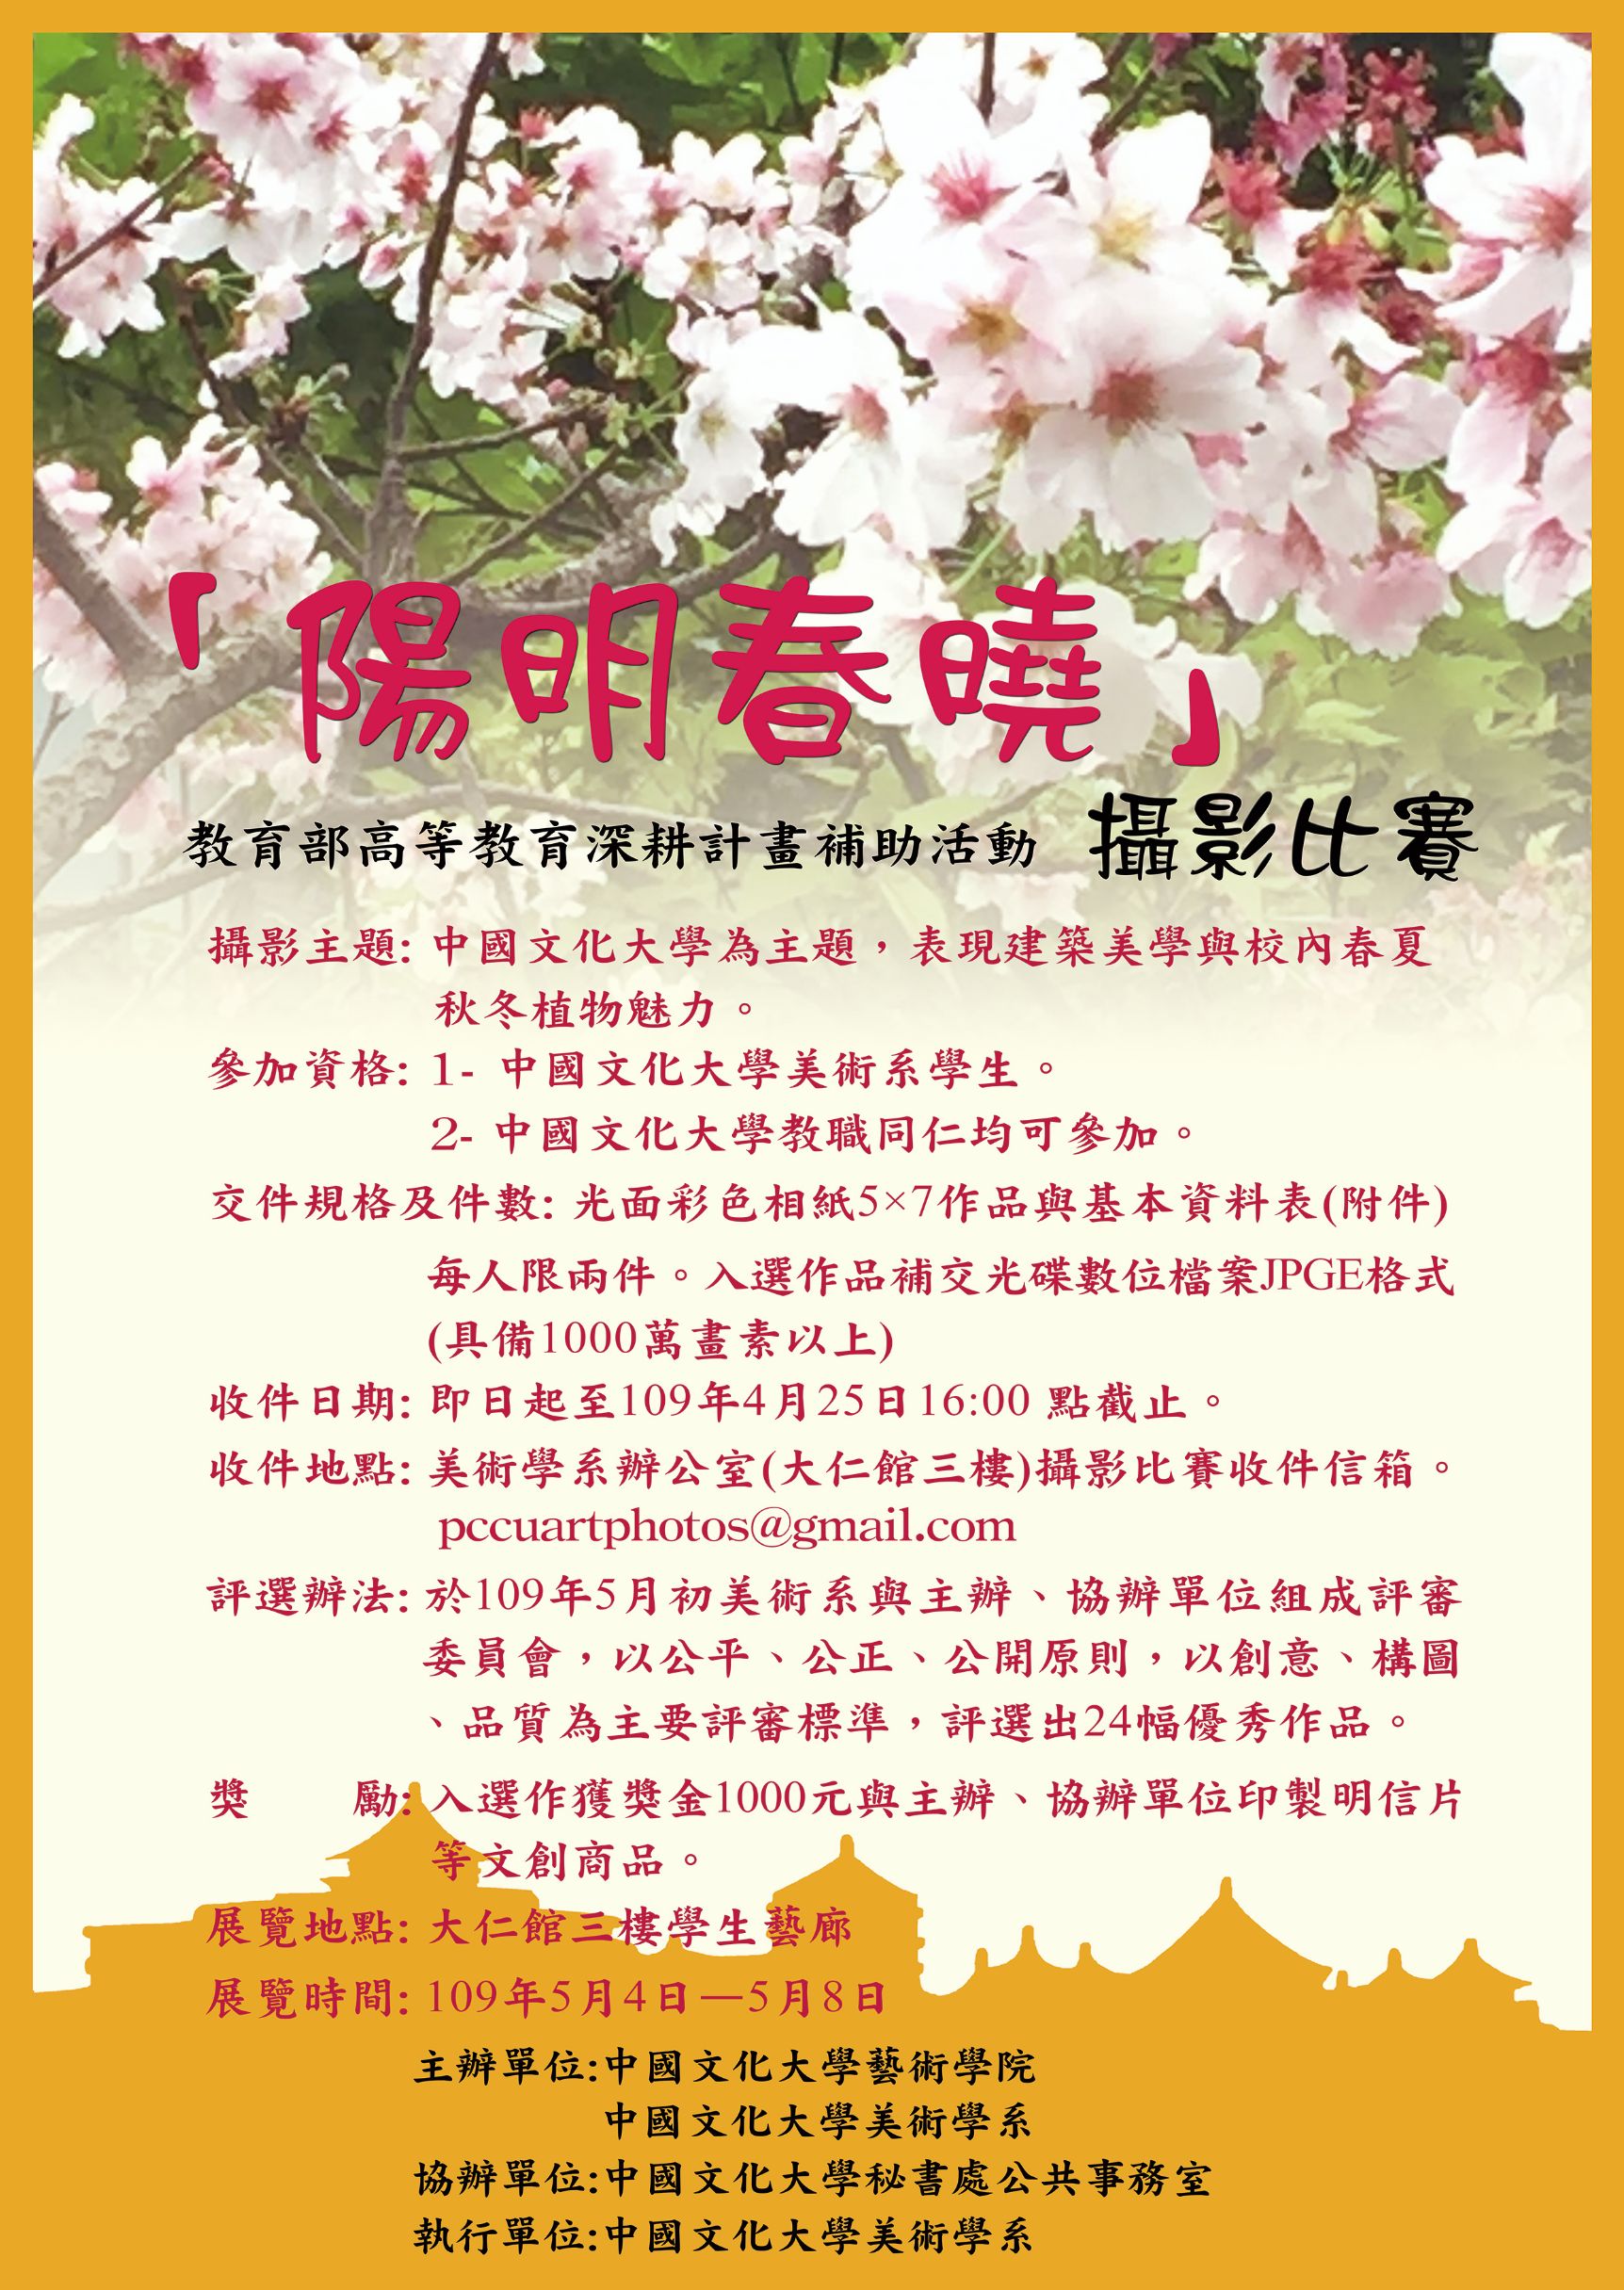 中國文化大學「陽明春曉」攝影比賽 海報